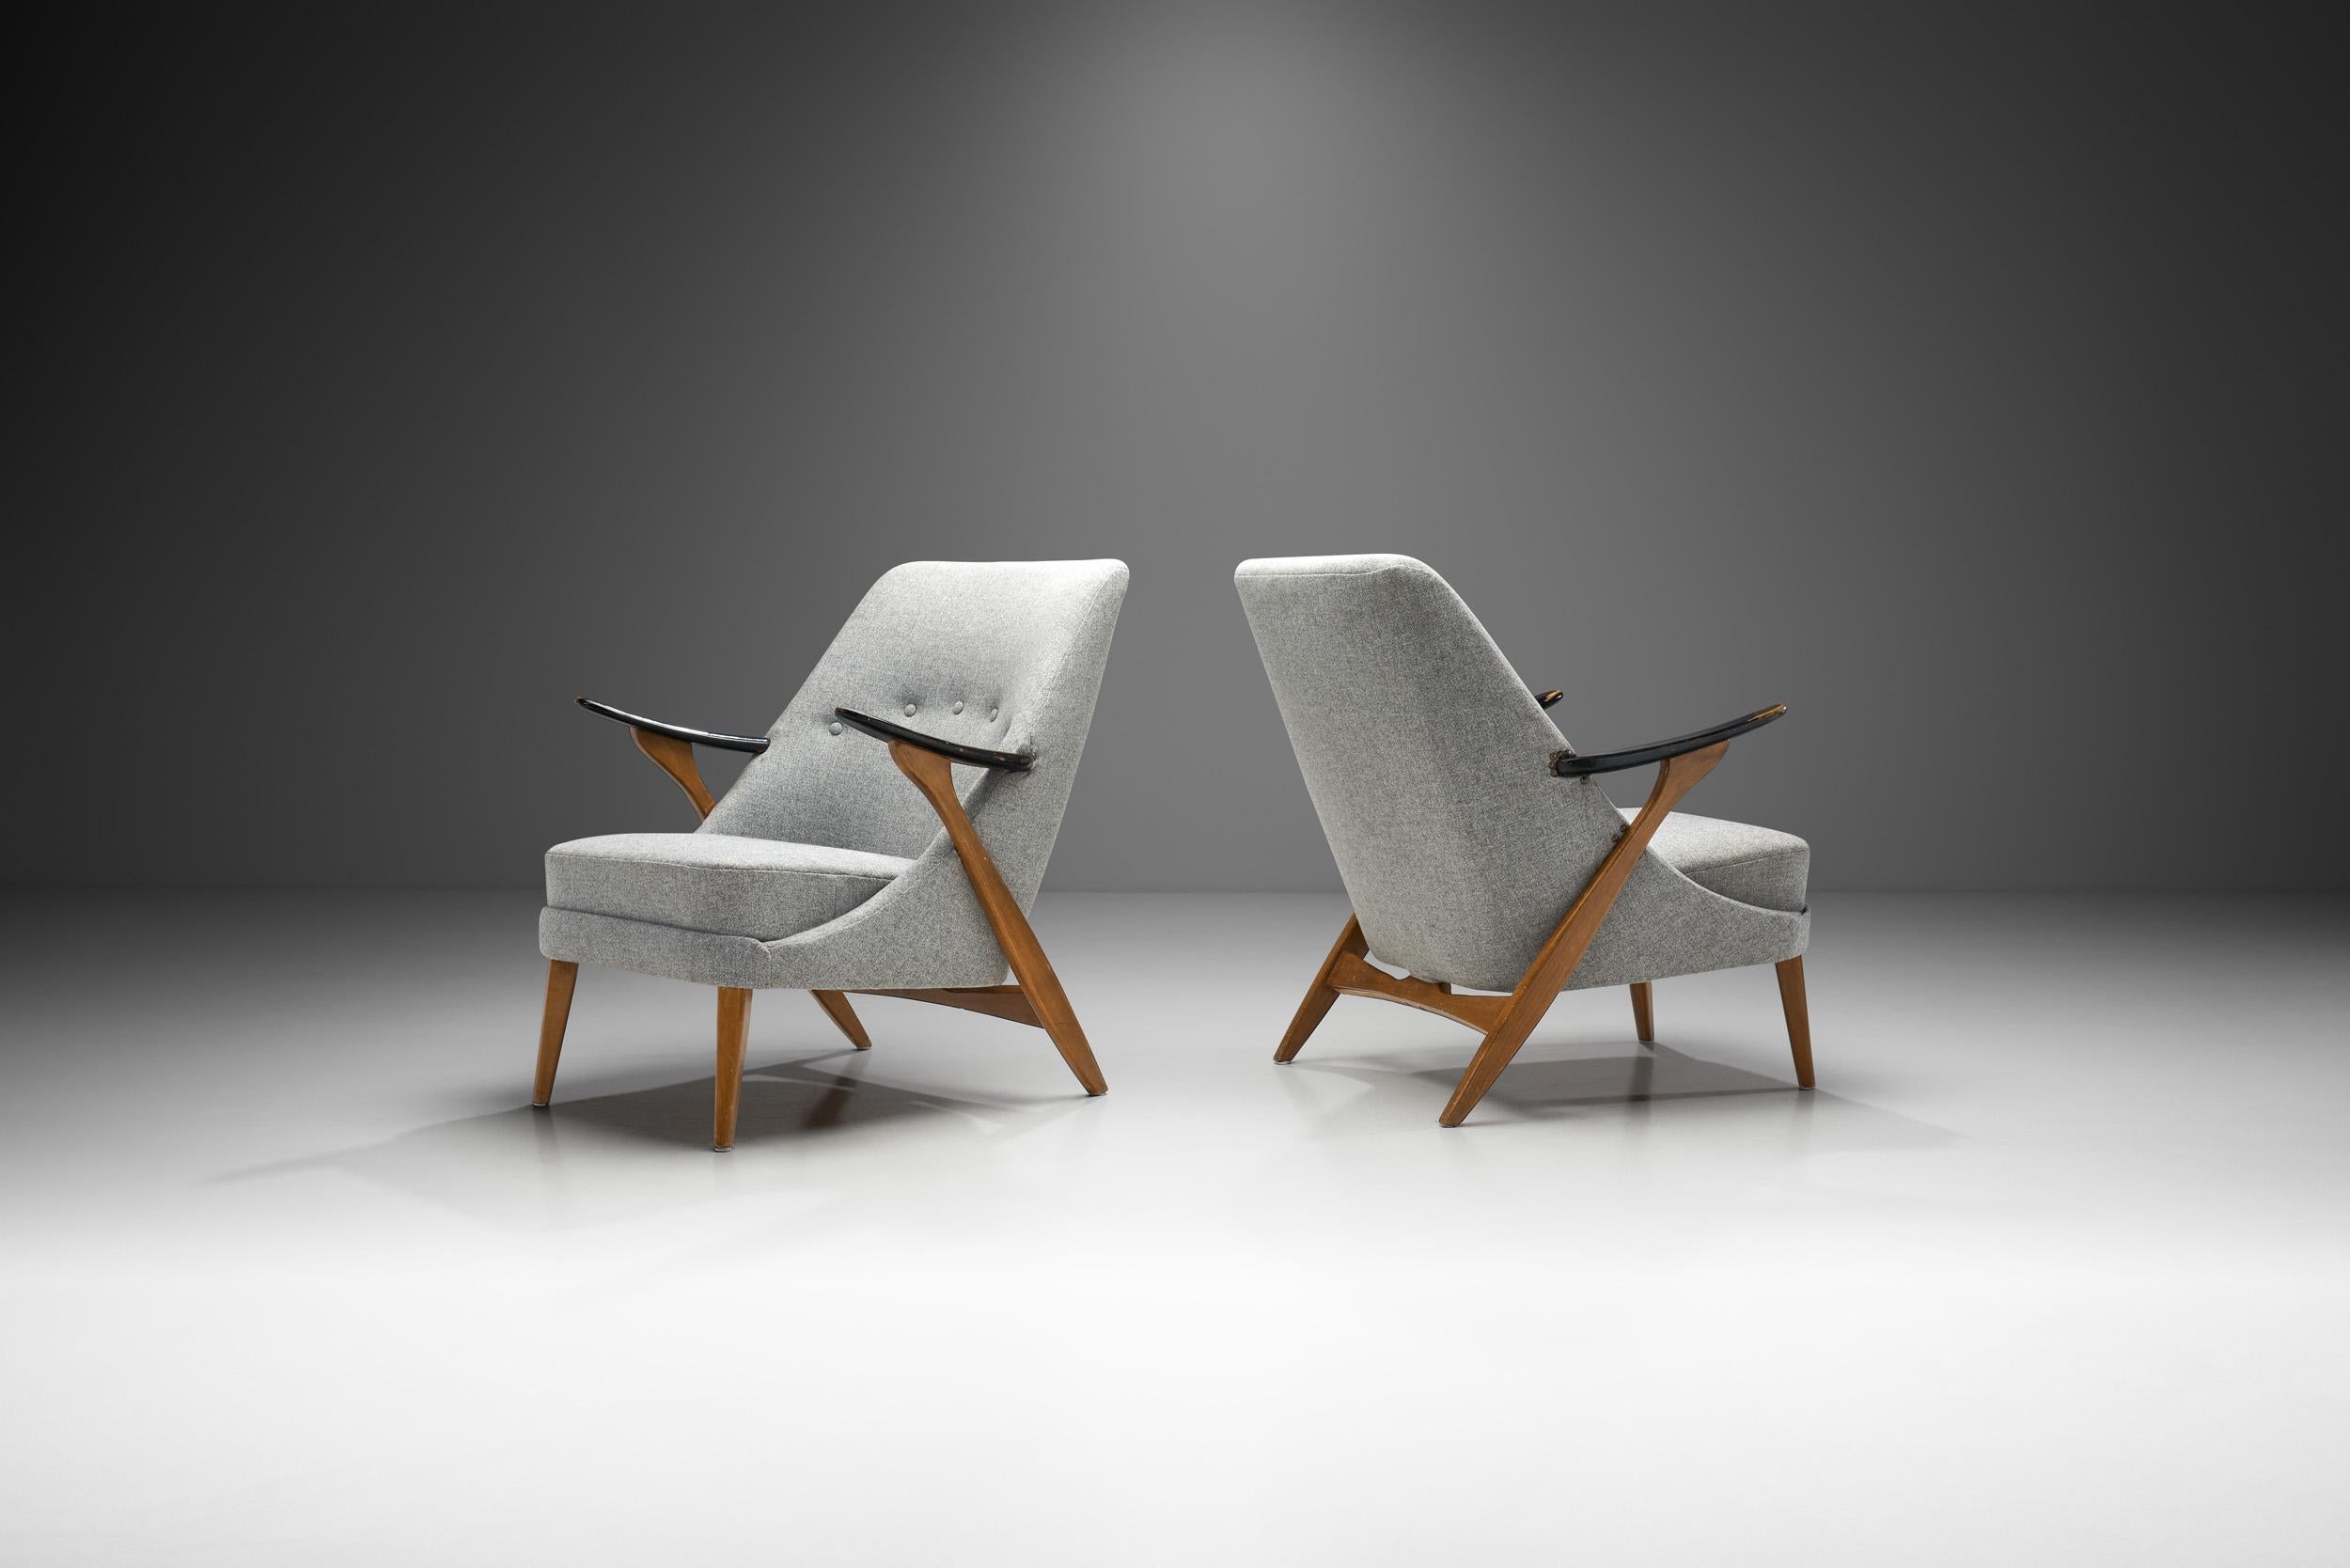 Cette paire de fauteuils spectaculaires du designer suédois Svante Skogh est un exemple plutôt rare du répertoire du designer d'intérieur et de mobilier. Avec une structure en bois créative et magistrale, ces chaises méritent de figurer en bonne